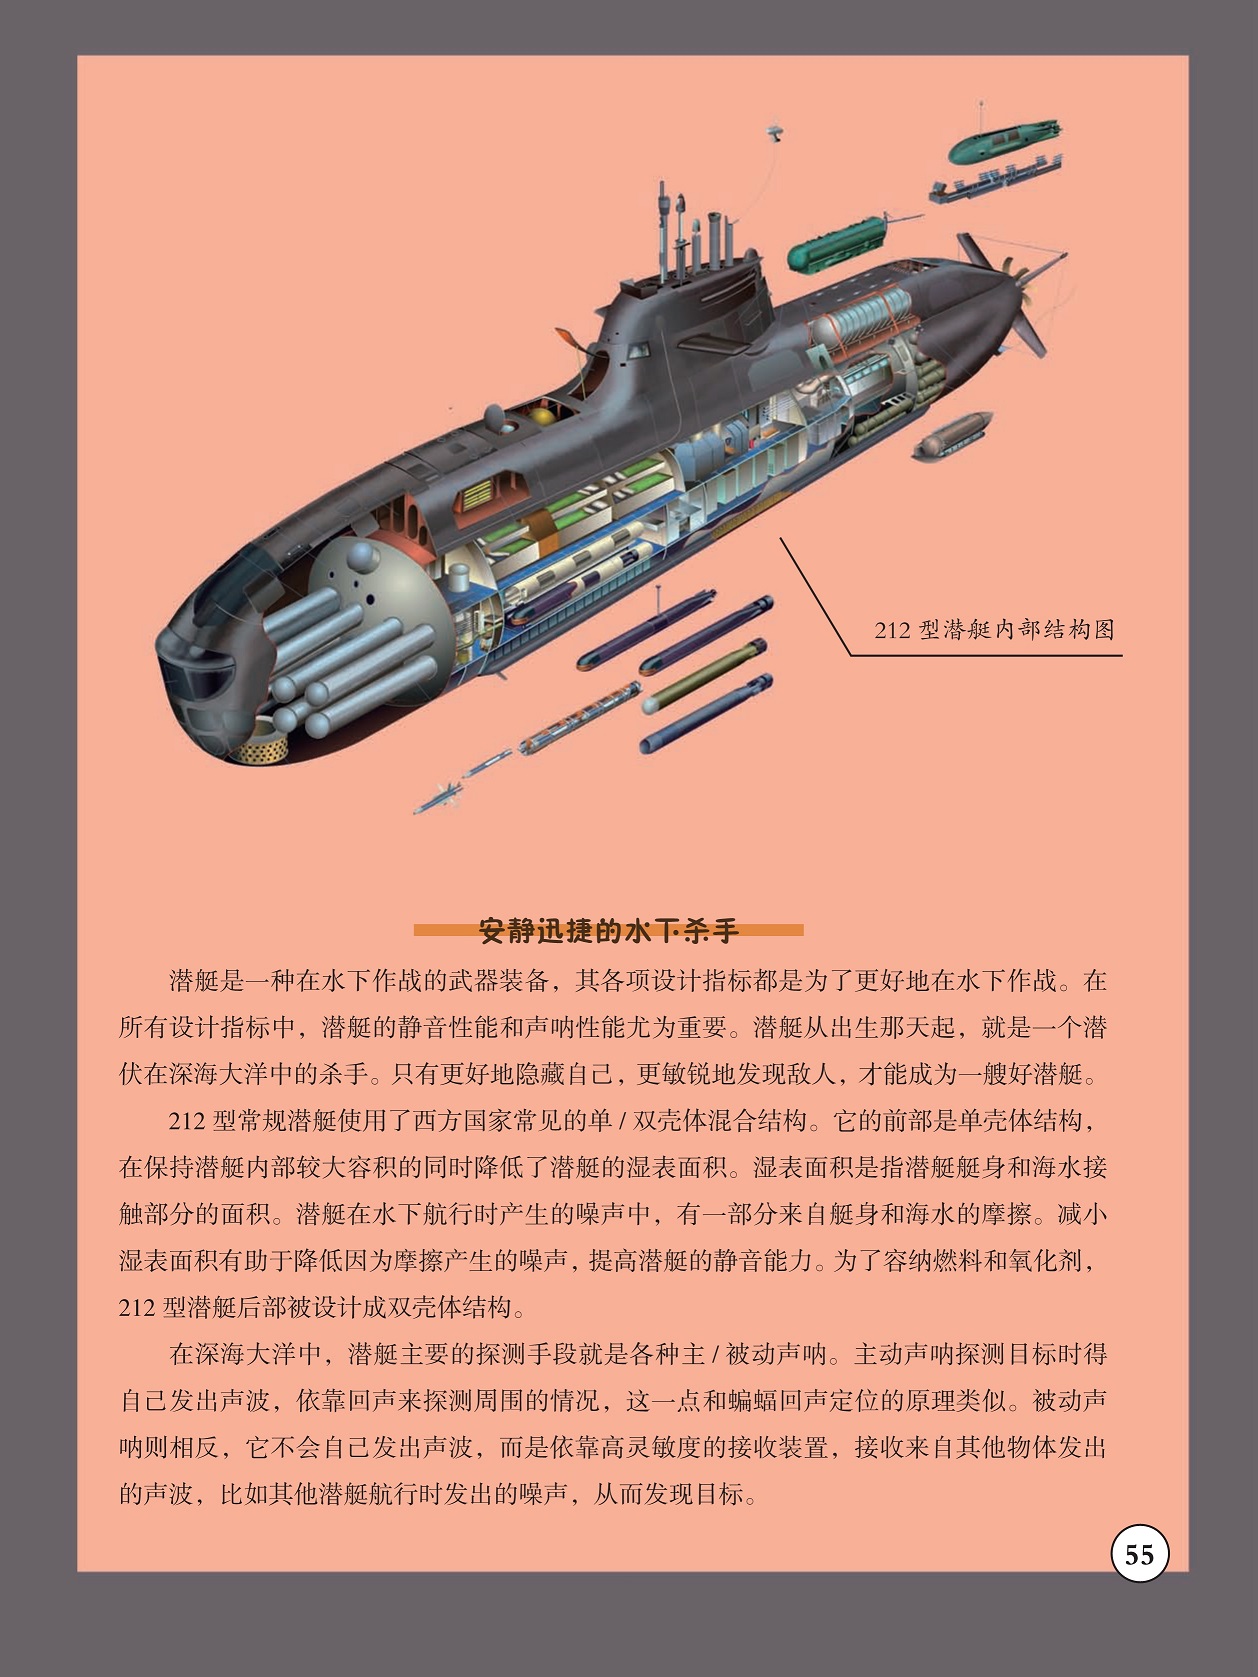 安静迅捷的水下杀手,潜艇是一种在水下作战的武器装备